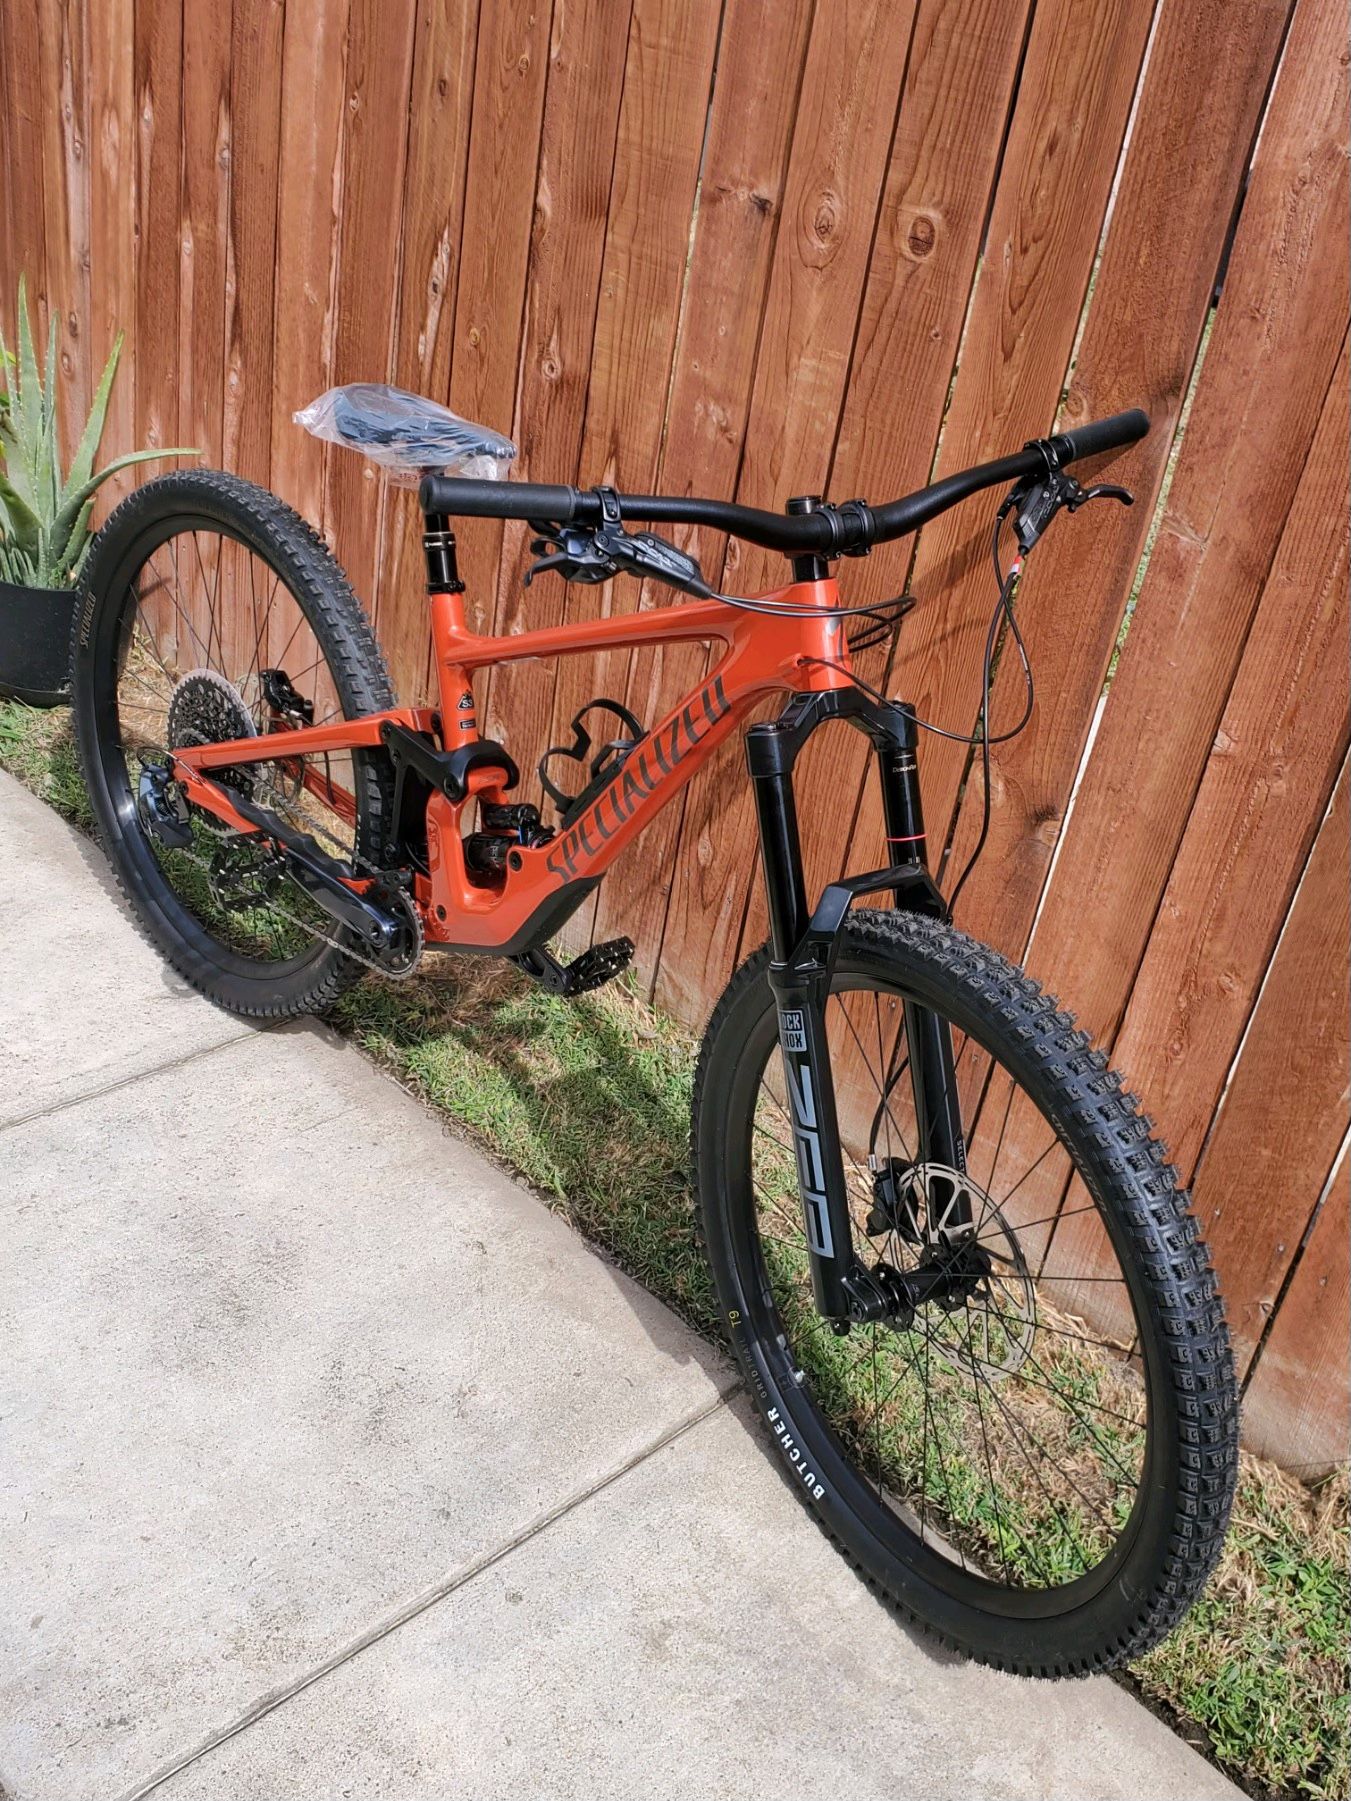 specilized enduro bike $4000 new carbon fiber bike frame 2022 S3 large bike Tires 29”